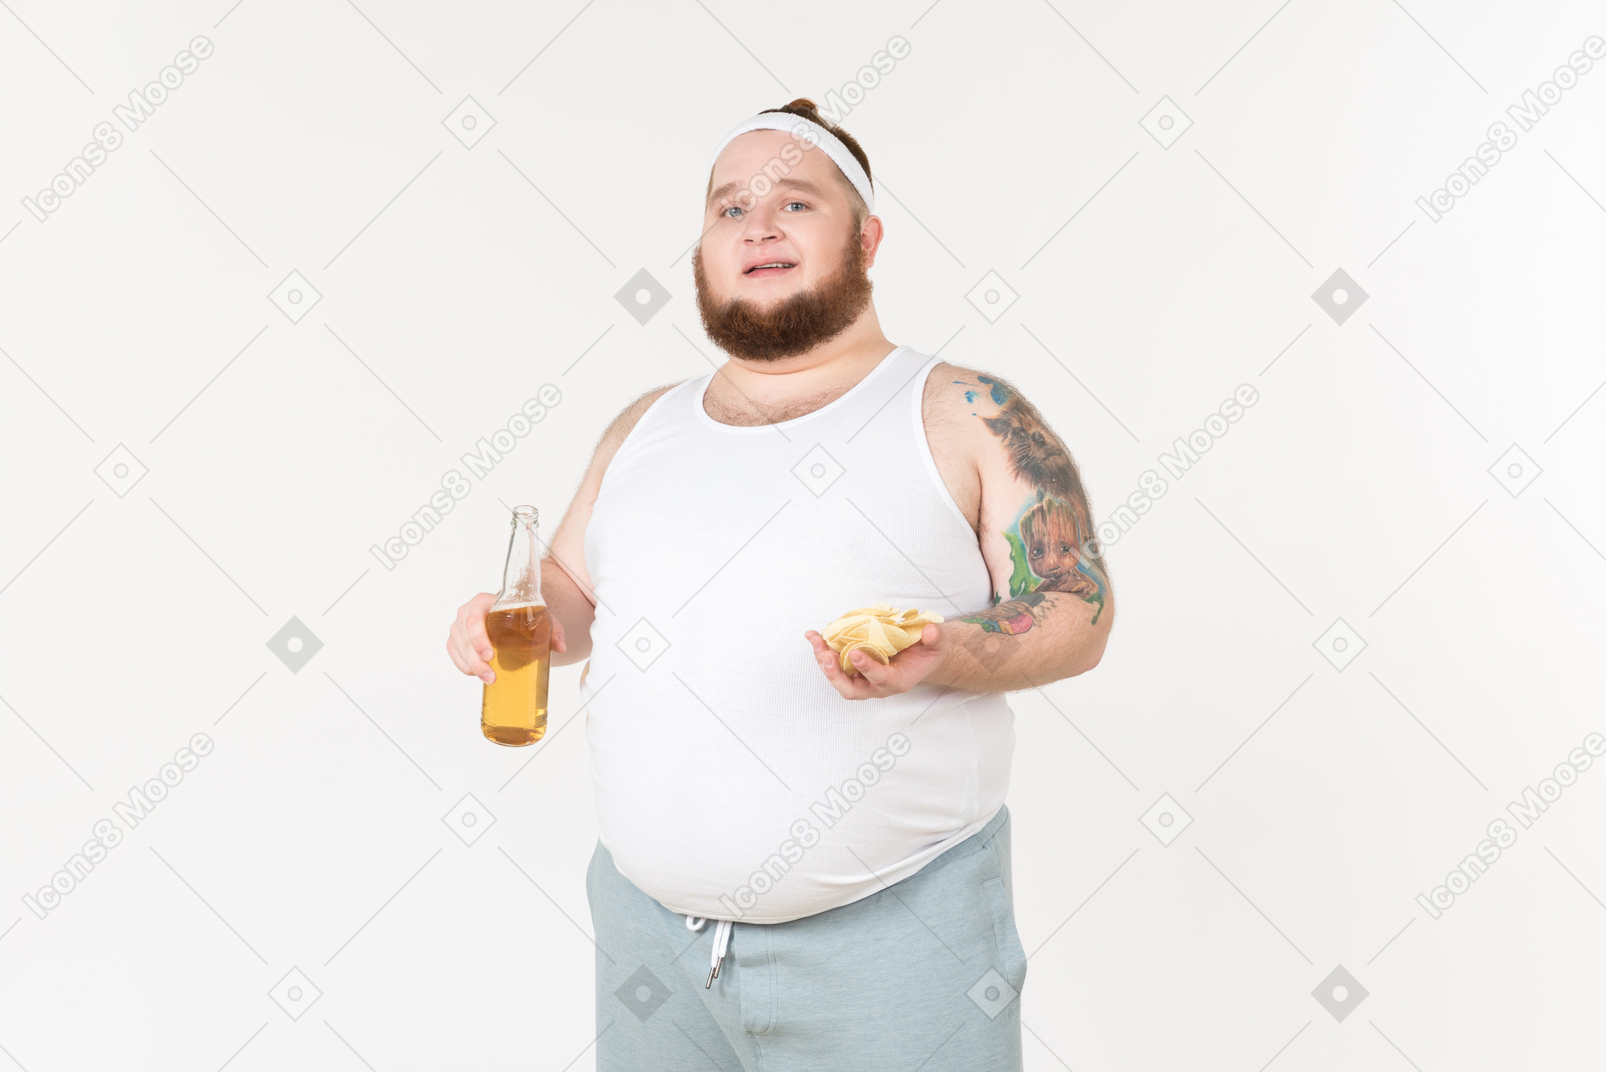 맥주 한 병과 소수의 칩을 가진 운동복에 뚱뚱한 남자